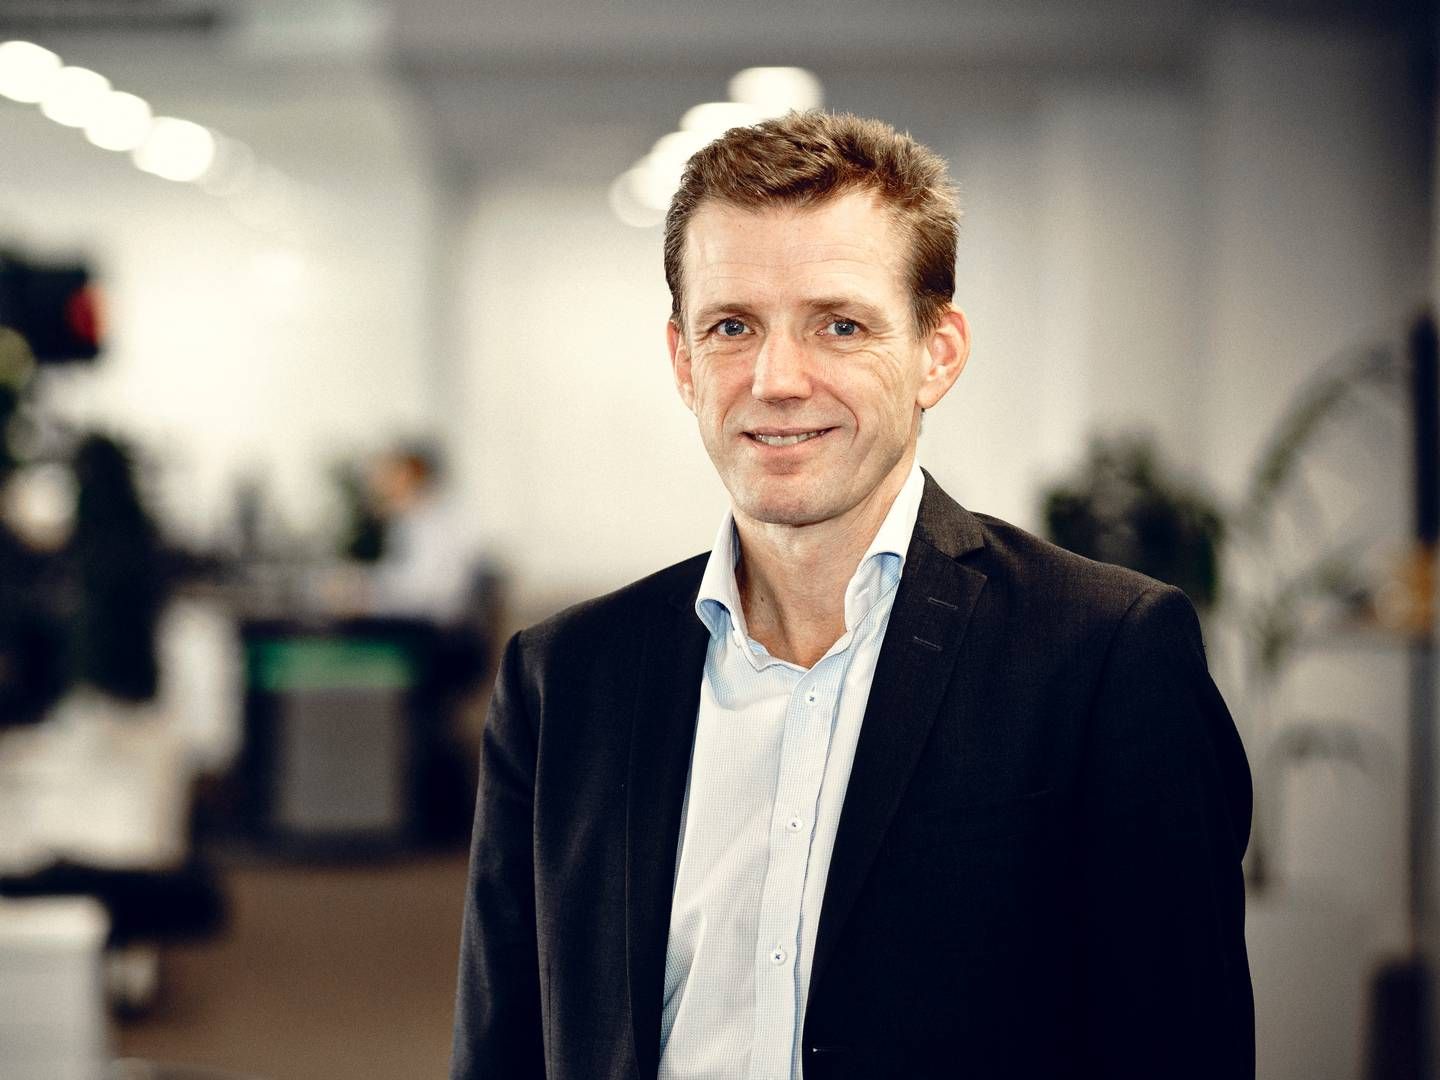 Kent Jensen er adm. direktør i Dansk Sundhedssikring, der ventes at fortsætte som selvstændigt brand efter Topdanmarks opkøb af selskabet. | Foto: Pr/dansk Sundhedssikring